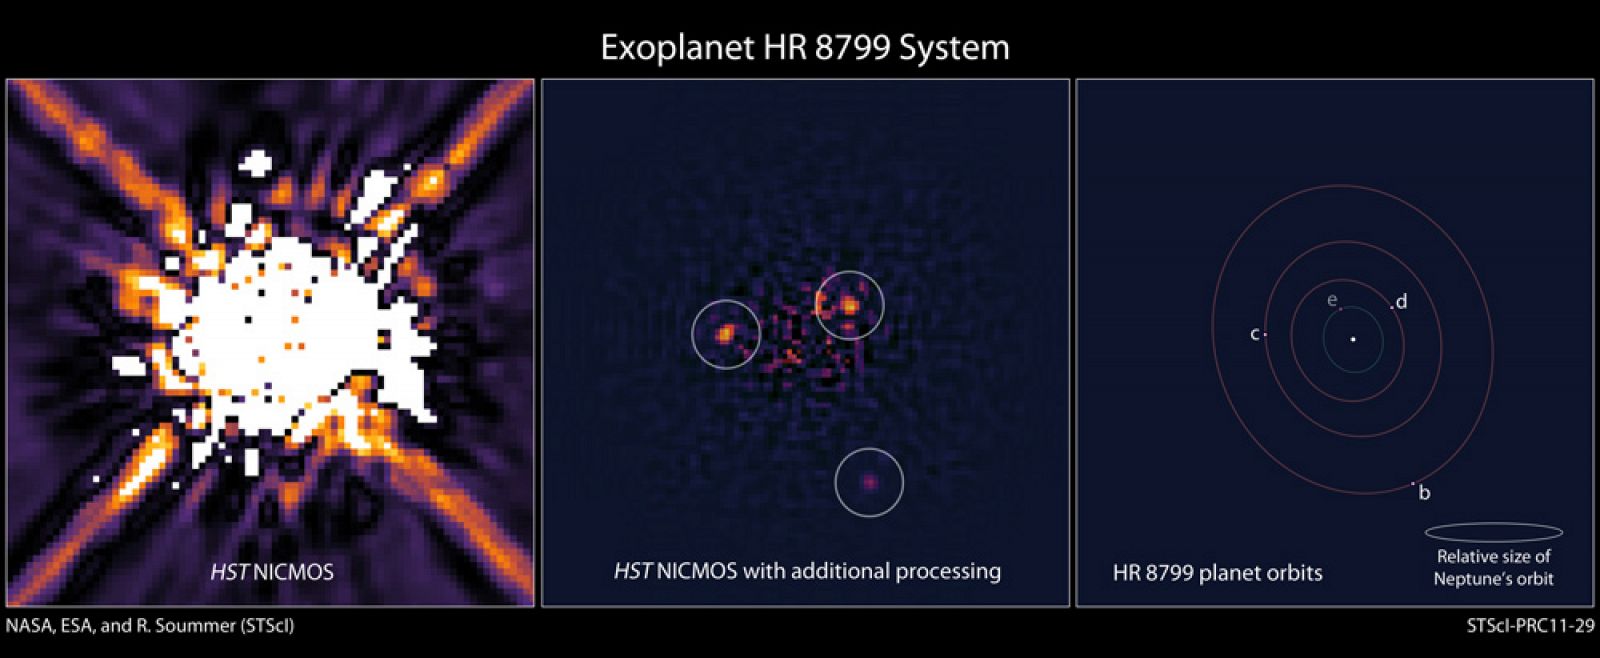 A la izquierda, la estrella HR 8799 tal y como fue captada por la cámara del Hubble en 1998. En el centro, el procesamiento reciente de los datos con un software  más moderno. A la derecha  el sistema exoplanetario HR 8799 basado en el reanálisis de